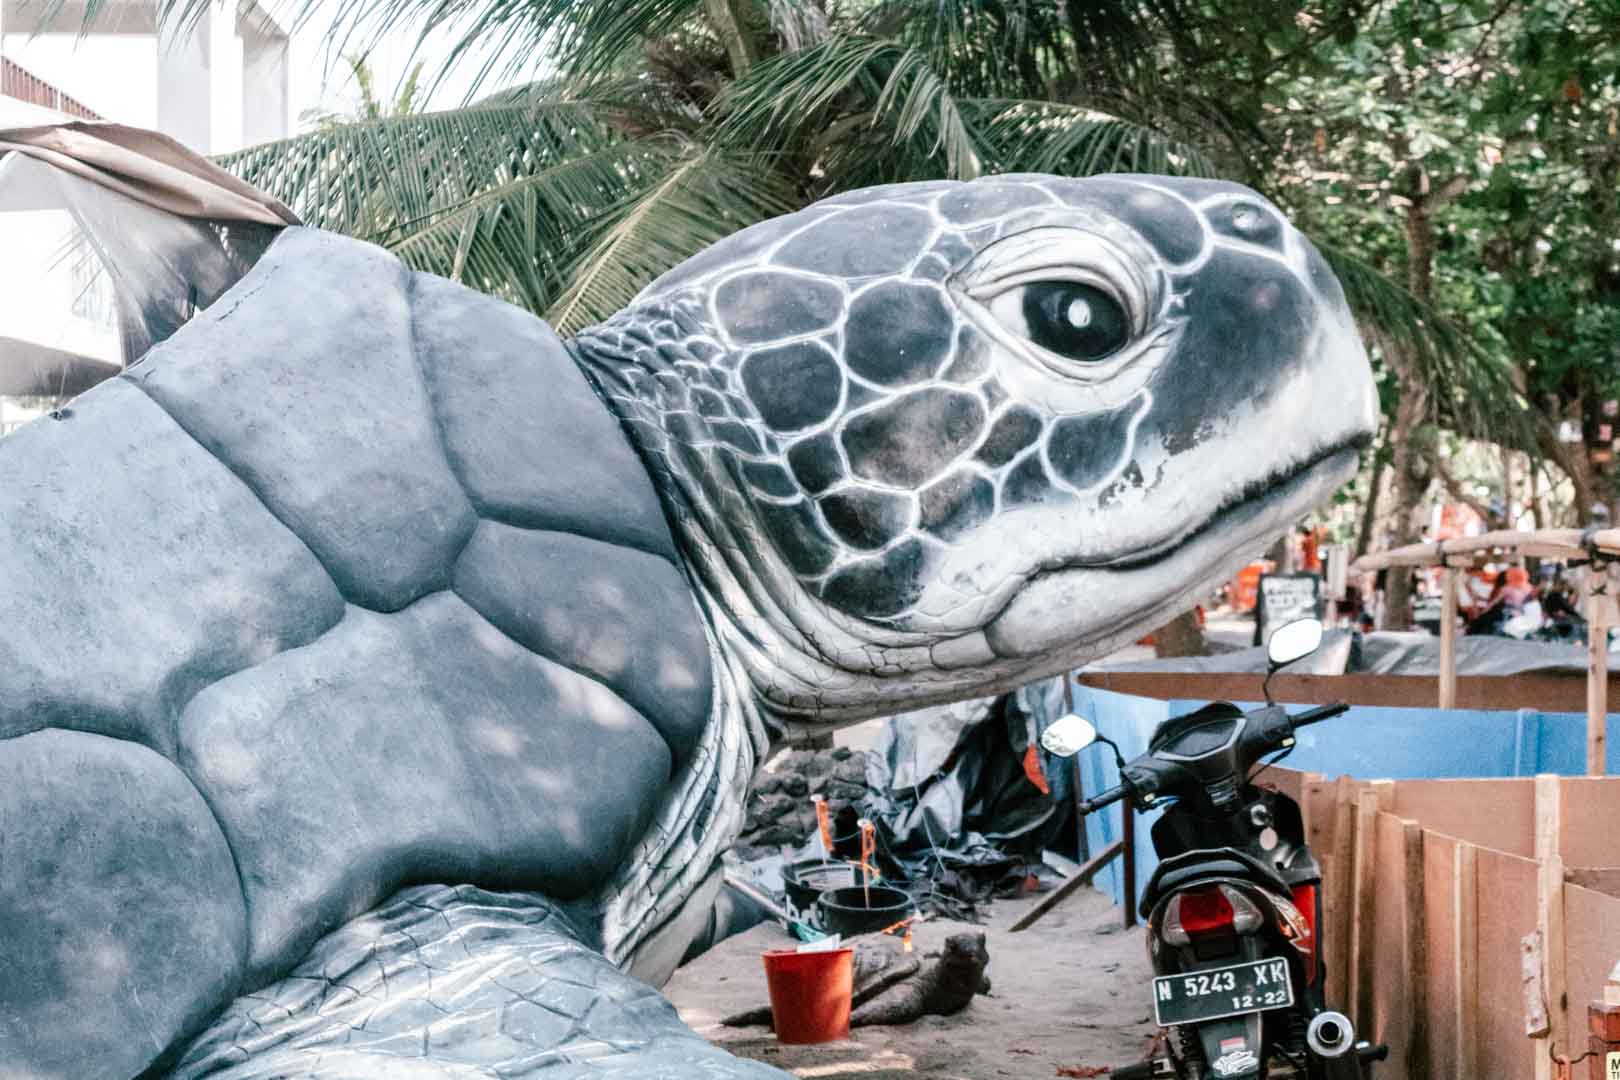 Bali Sea Turtle Society in Kuta